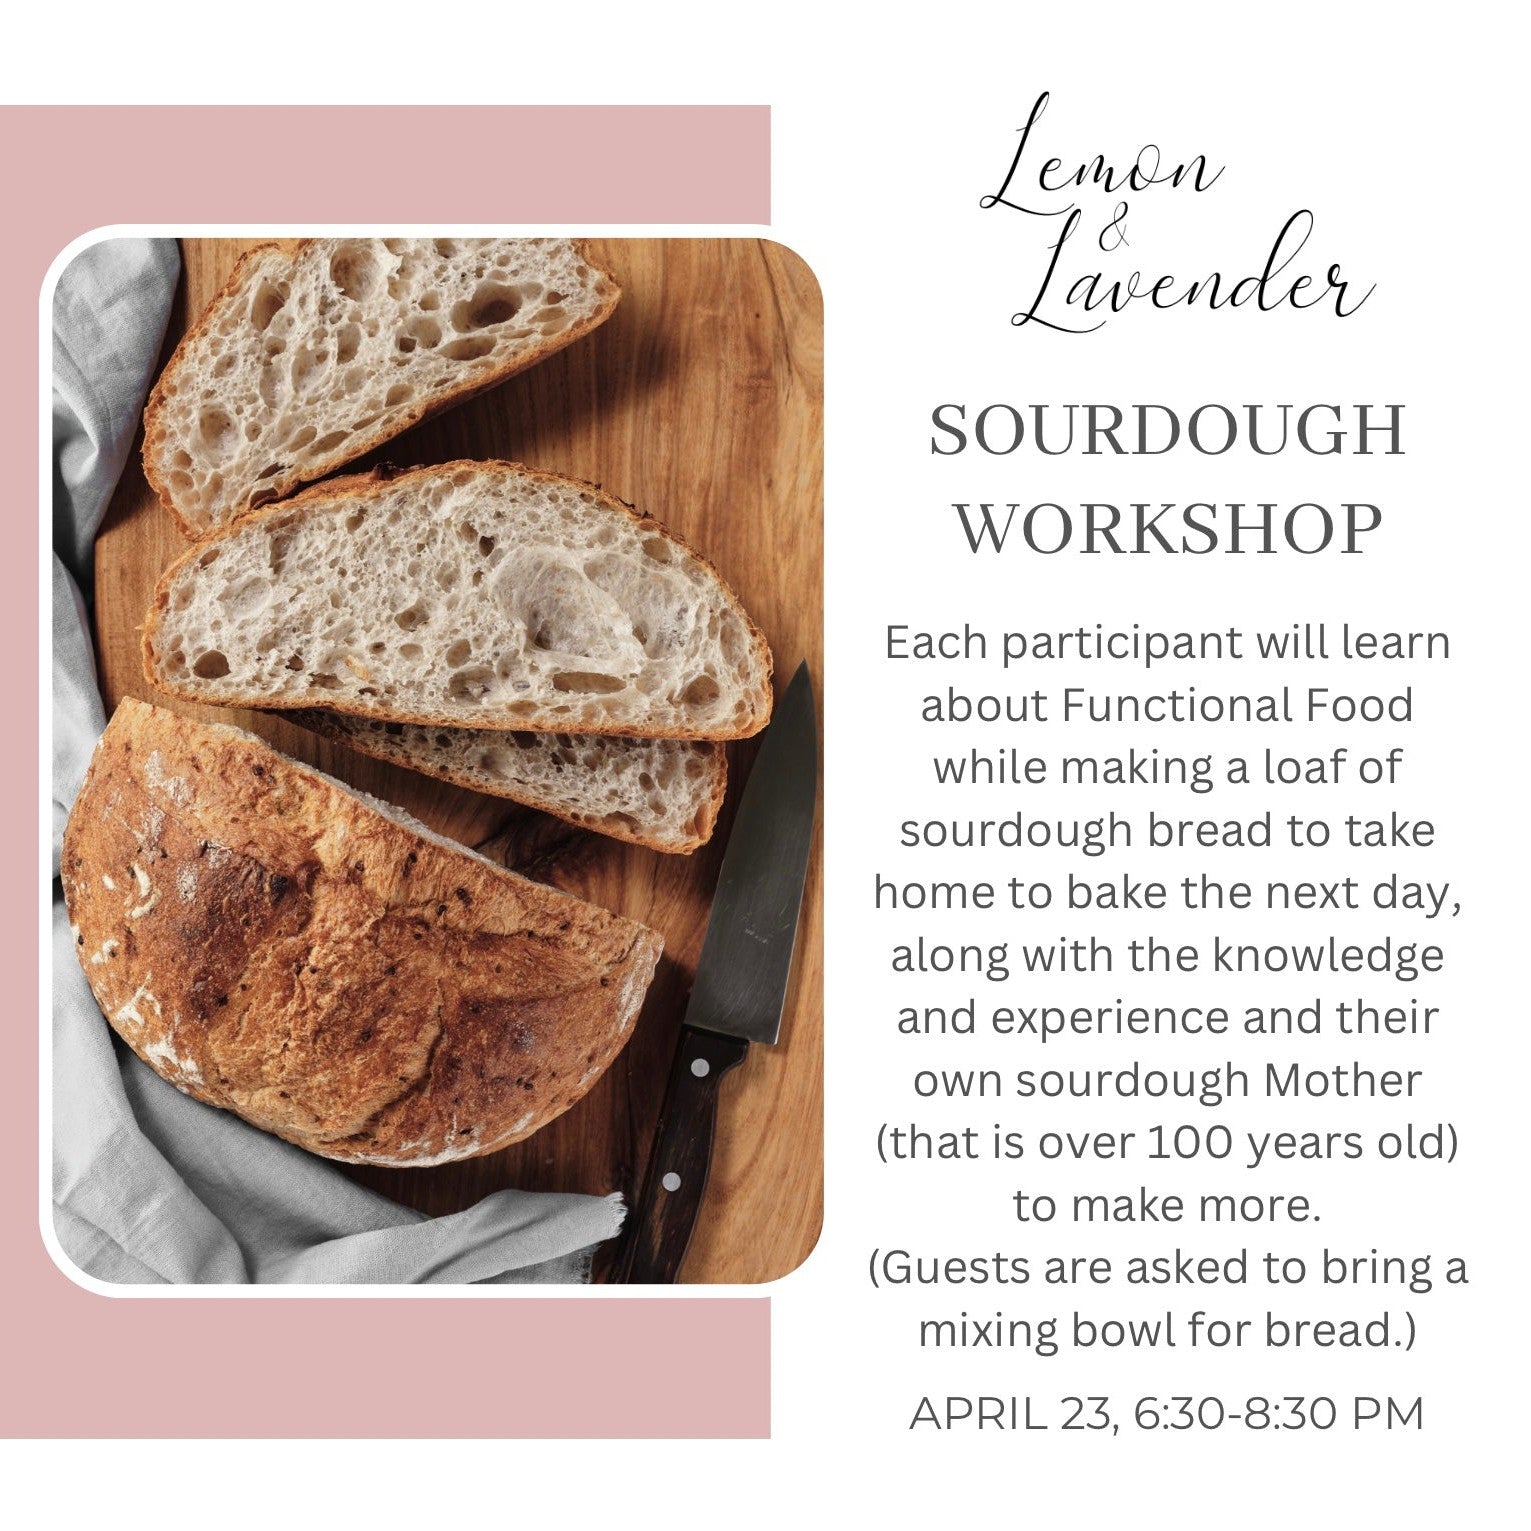 Sourdough 101 Workshop - April 23rd - Lemon & Lavender